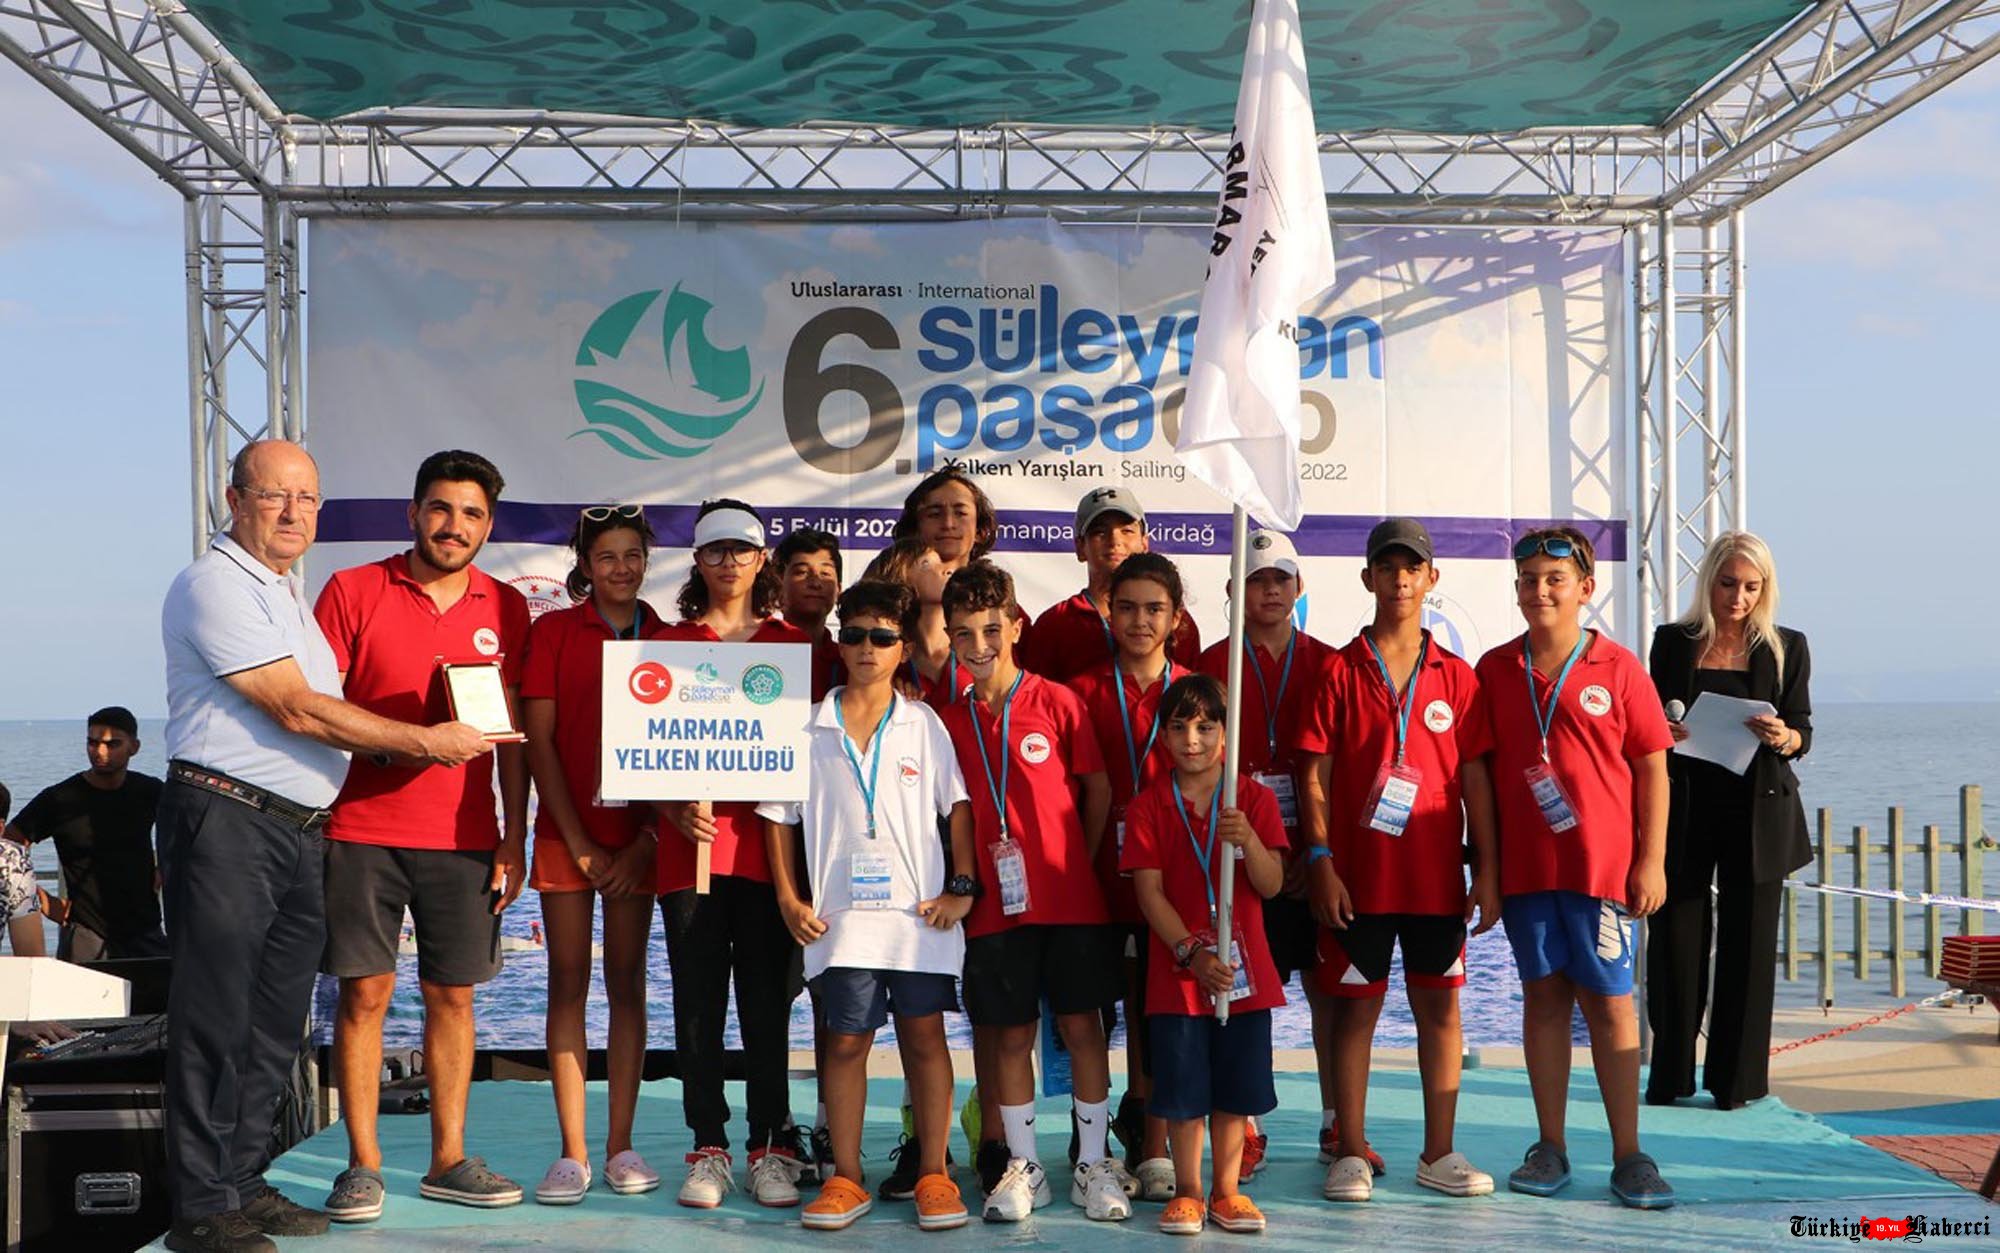  video#Tekirdağ’da Cup Yelken Yarışları’nın açılışı yapıldı